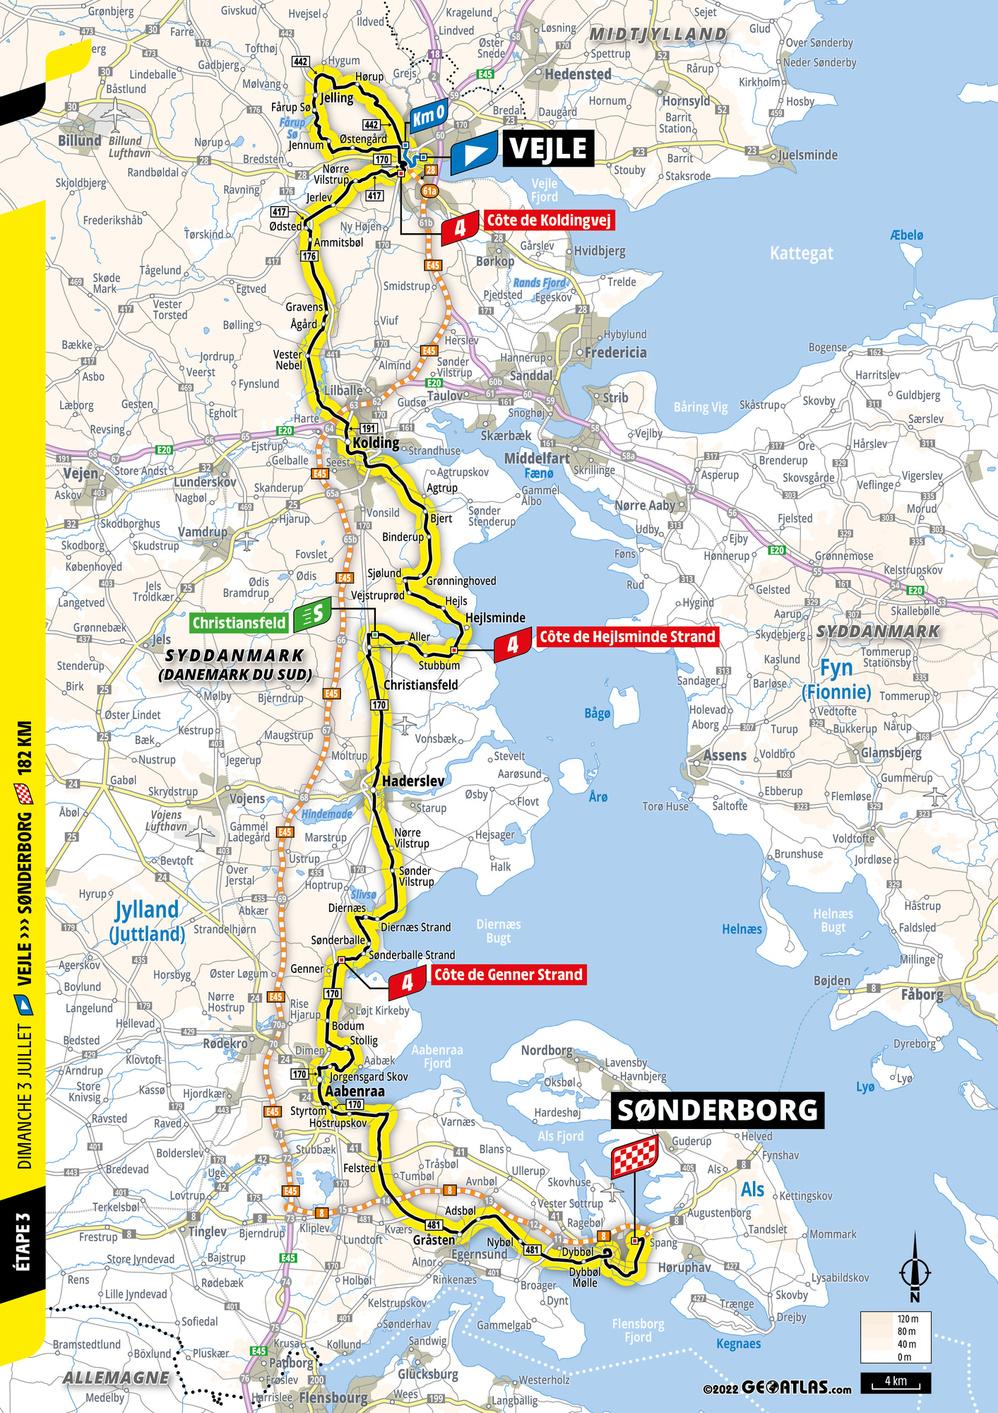 Het parcours van de derde rit naar Sønderborg